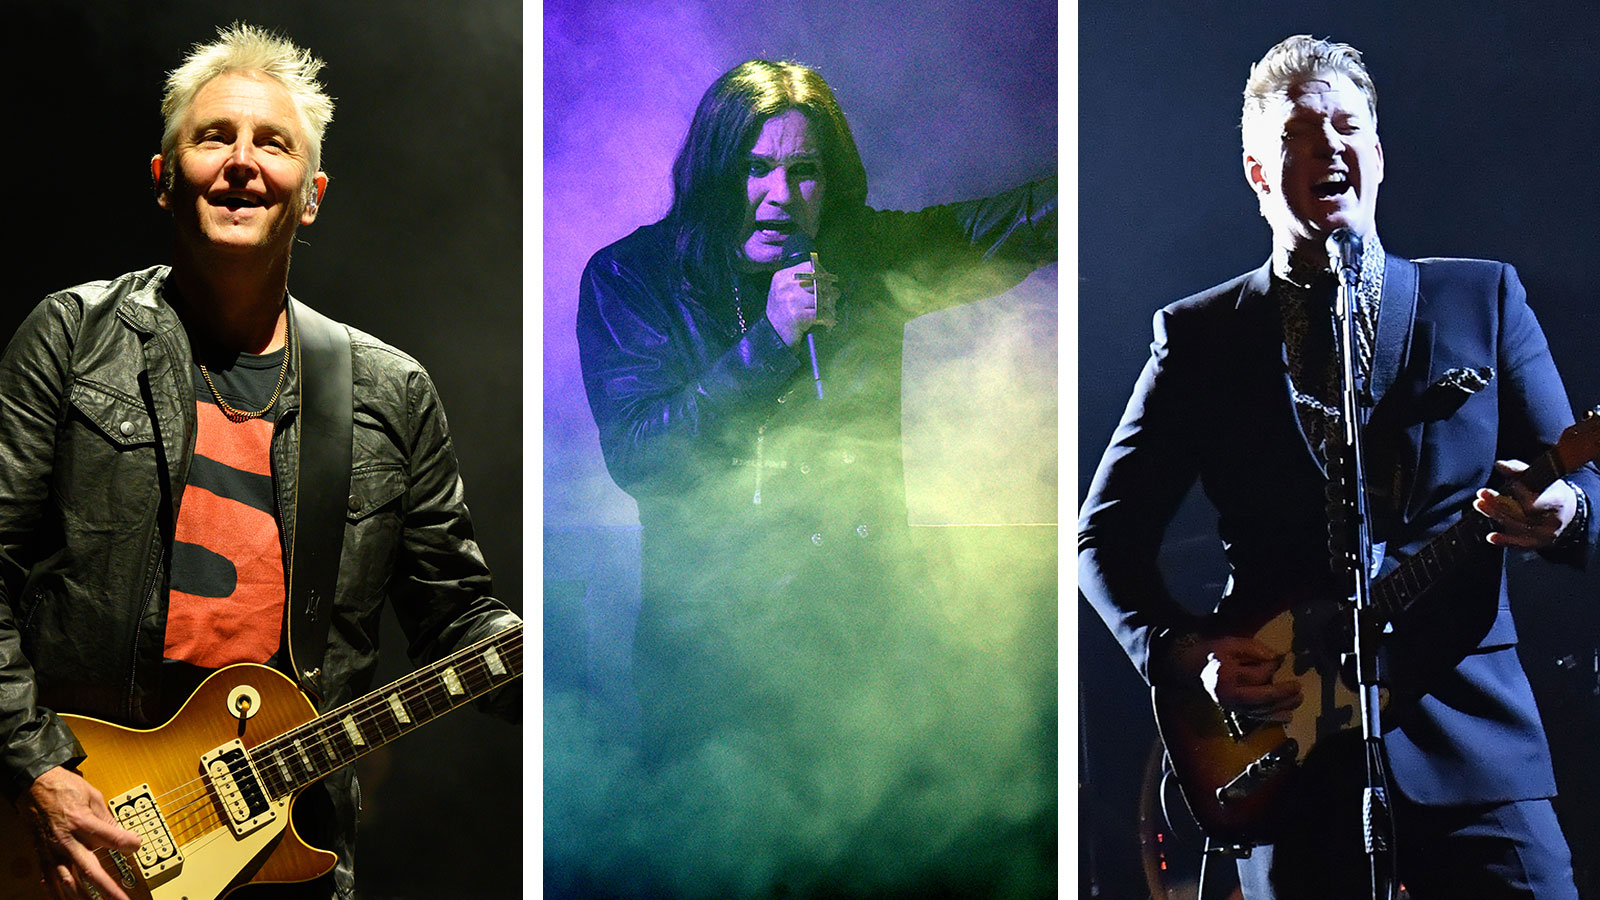 Josh Homme y Mike McCready aparecerán en el nuevo disco de Ozzy Osbourne, según Chad Smith